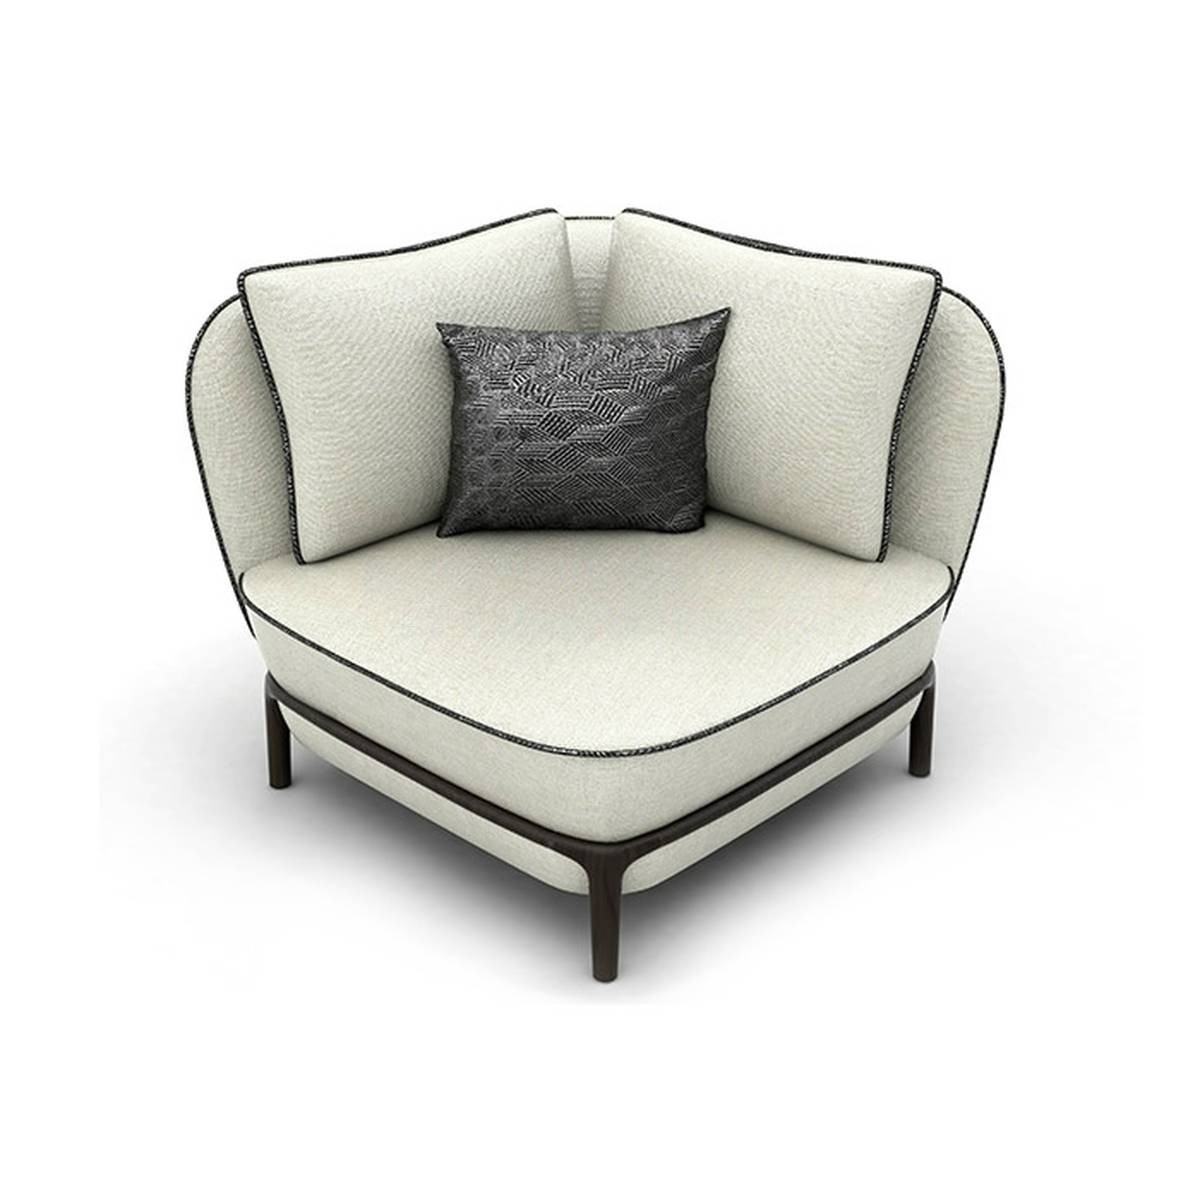 Кресло Durban armchair из Италии фабрики PAOLO CASTELLI